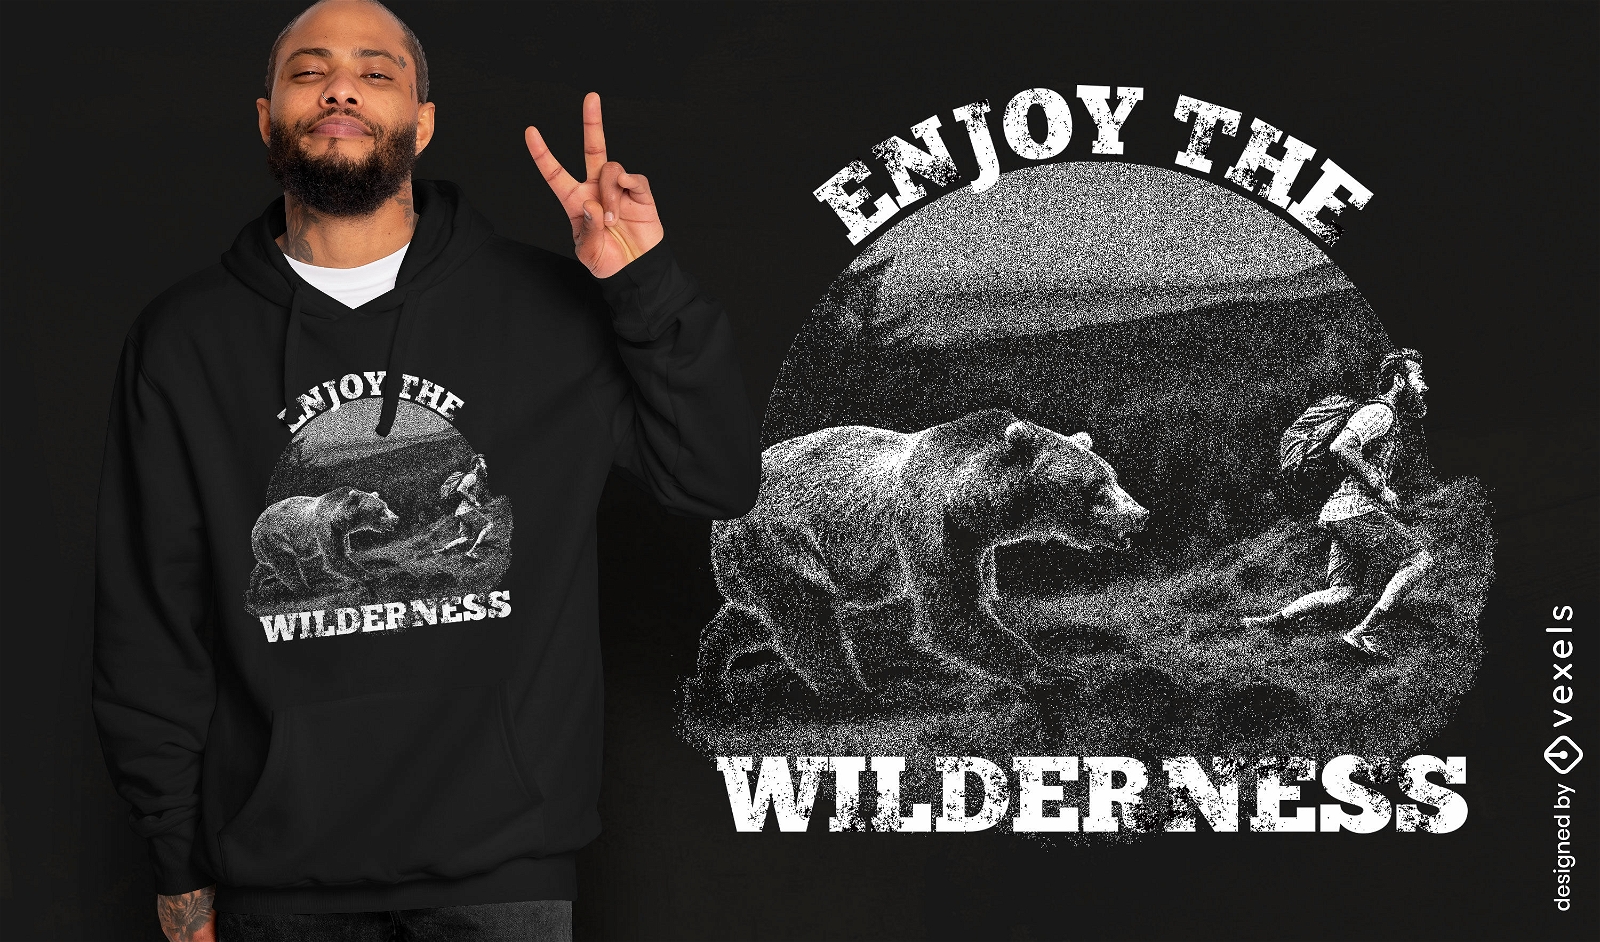 Wilderness enjoyment t-shirt design